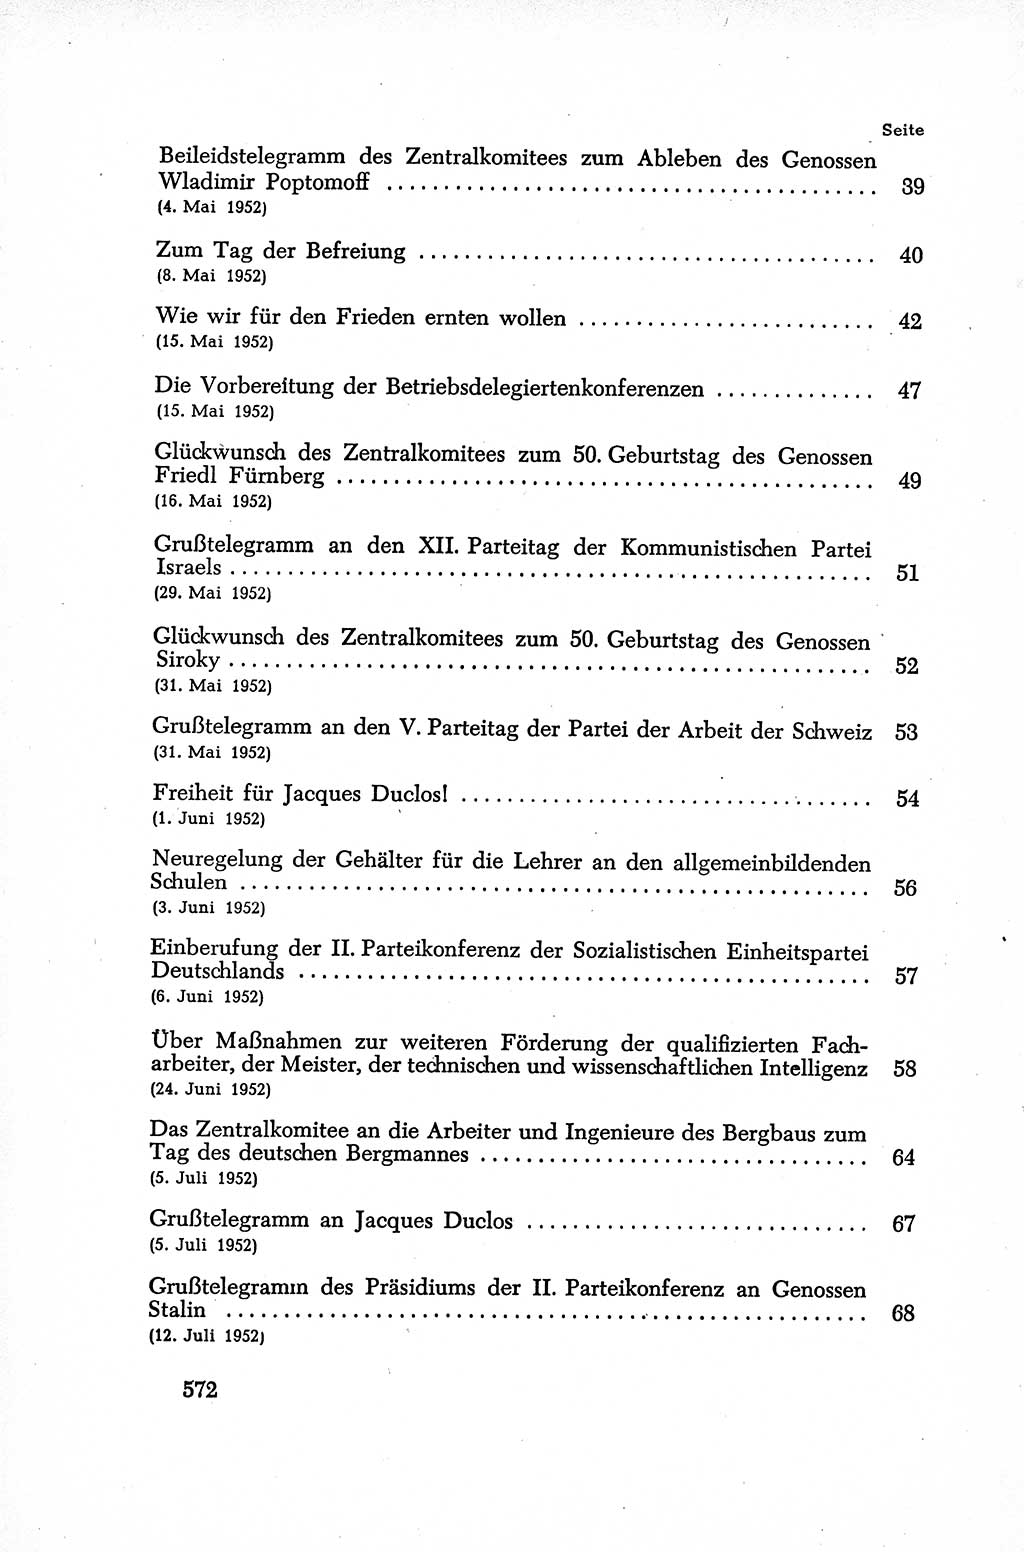 Dokumente der Sozialistischen Einheitspartei Deutschlands (SED) [Deutsche Demokratische Republik (DDR)] 1952-1953, Seite 572 (Dok. SED DDR 1952-1953, S. 572)